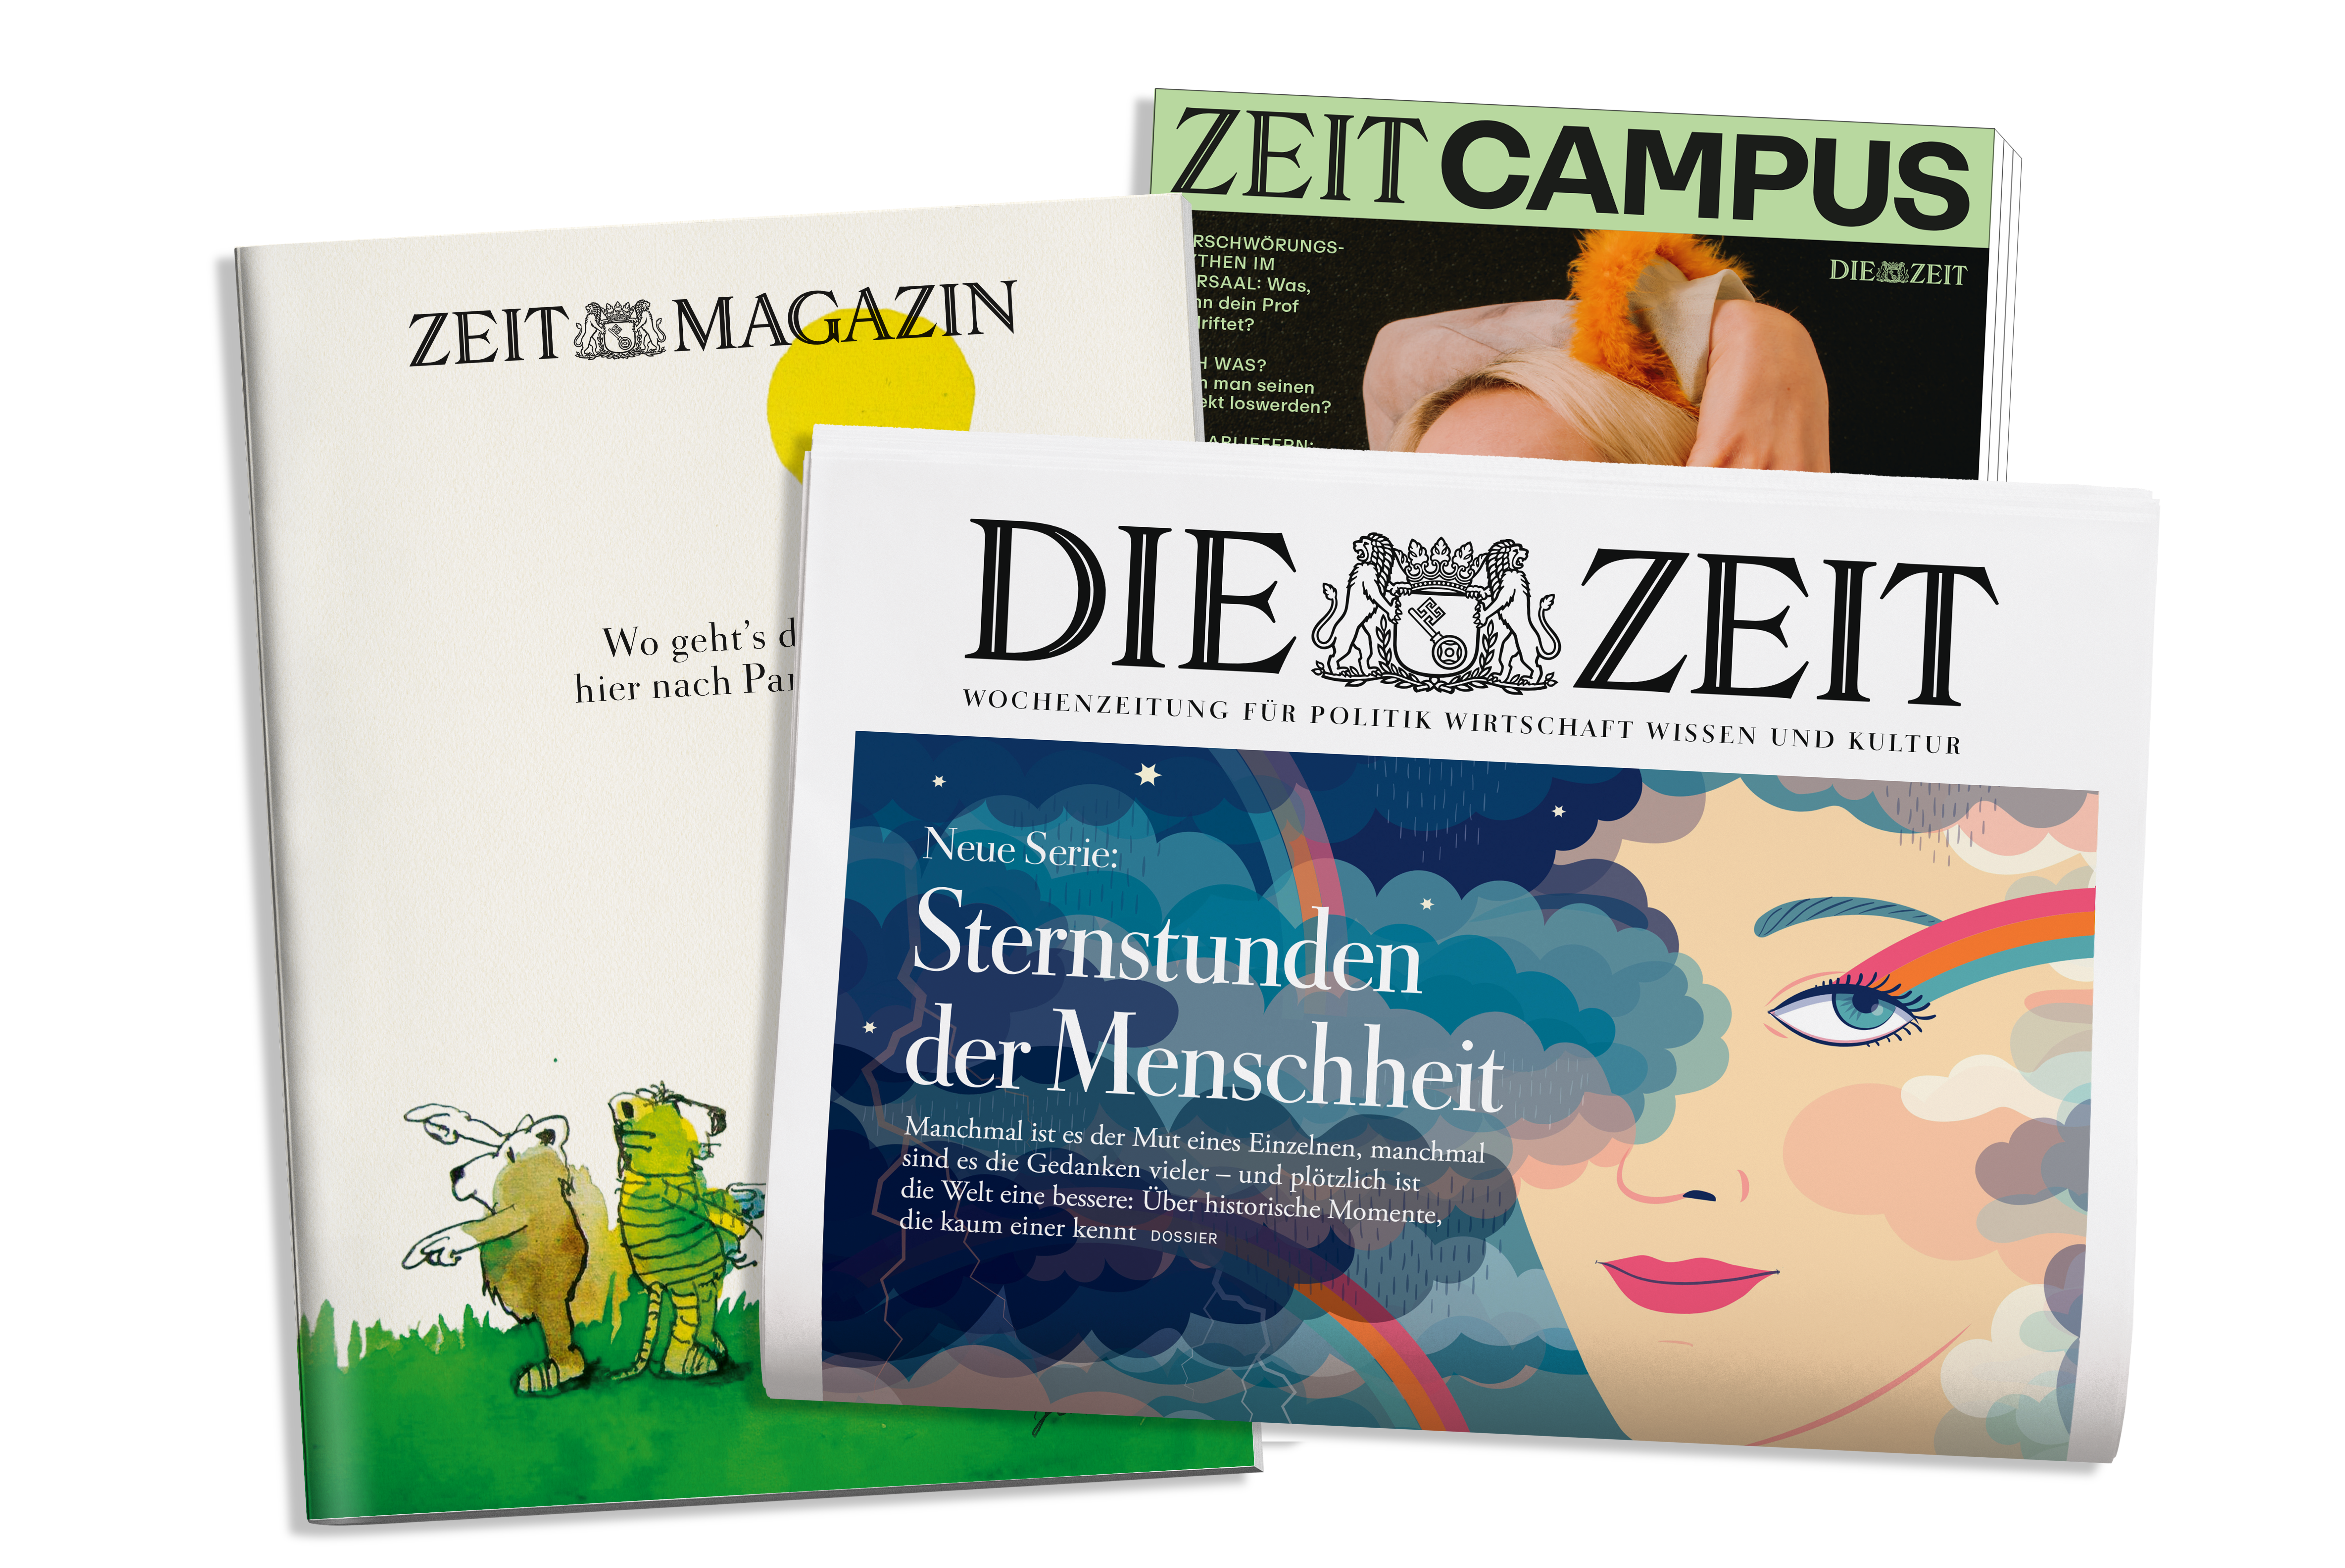 ZD Magazin Zeitung Campus RGB